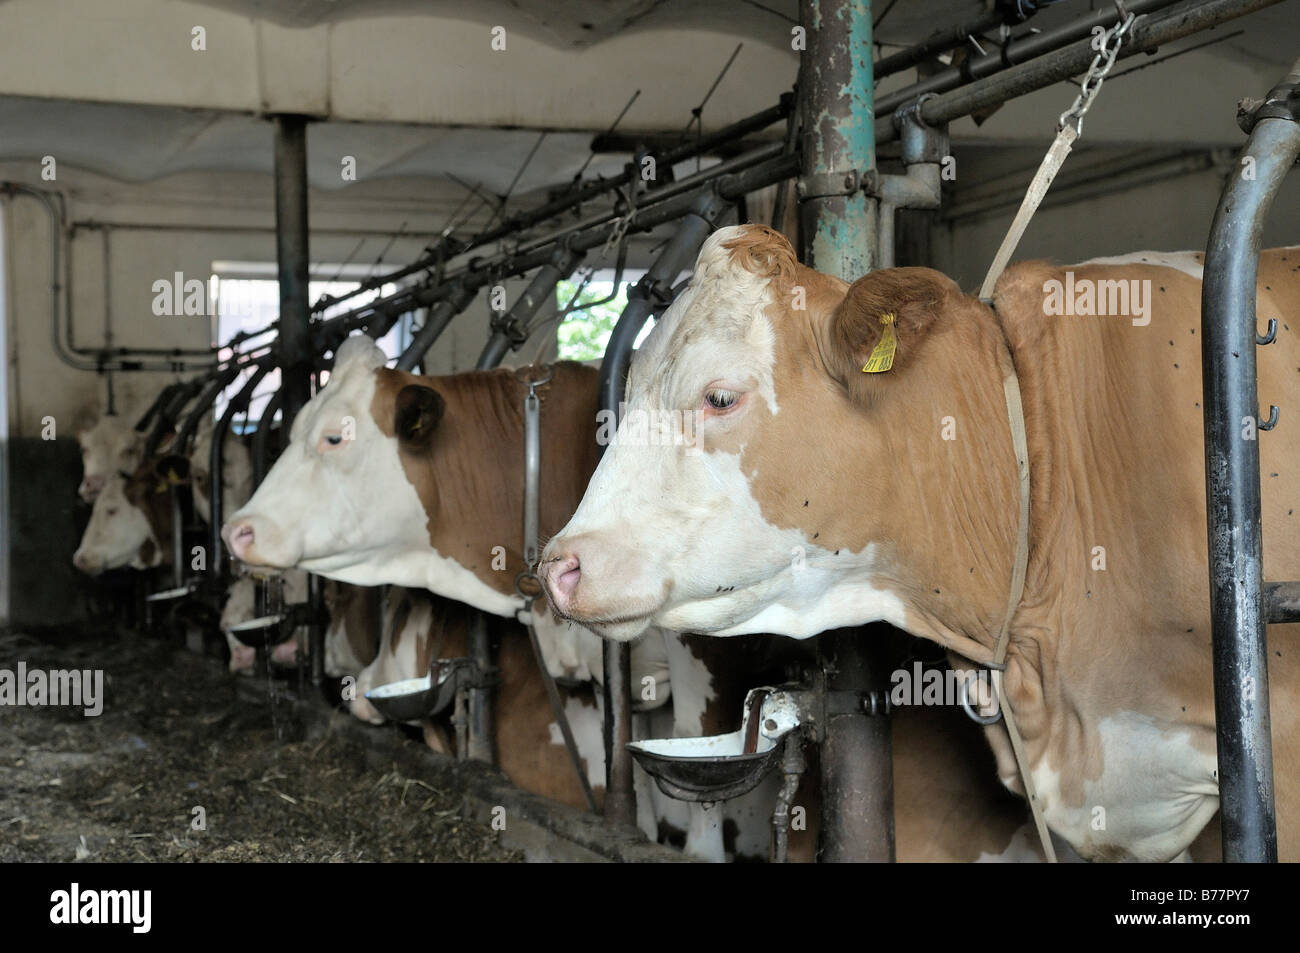 Les vaches laitières debout dans une grange, Upper Bavaria, Germany, Europe Banque D'Images